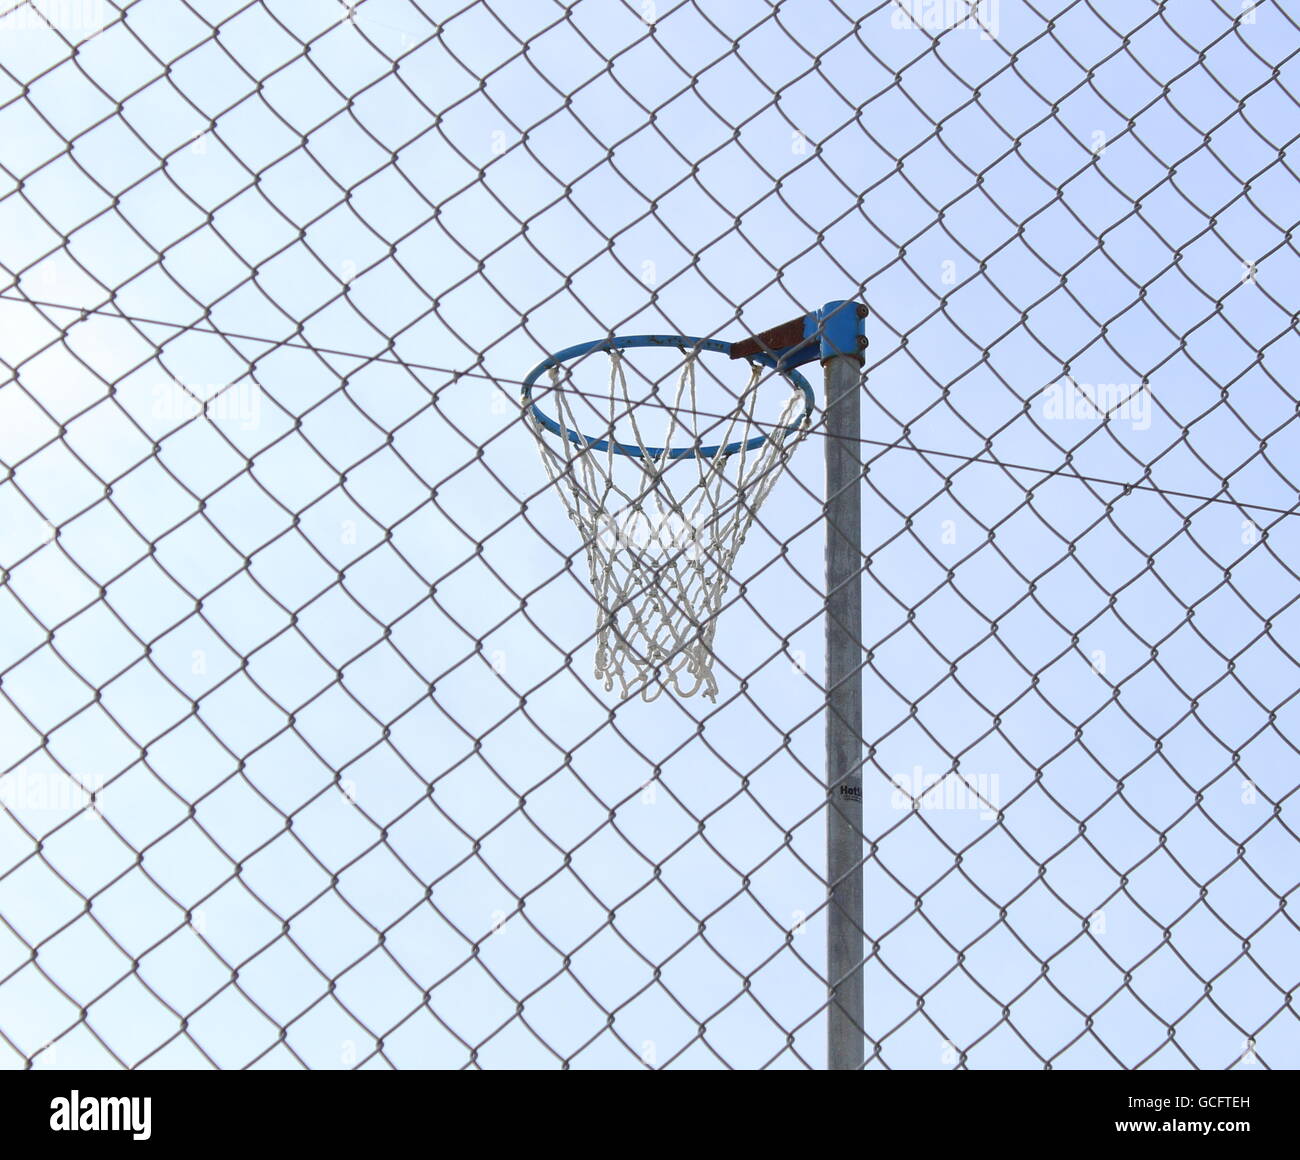 Anneau de netball à l'intérieur d'une aire de jeux entièrement clôturée Banque D'Images